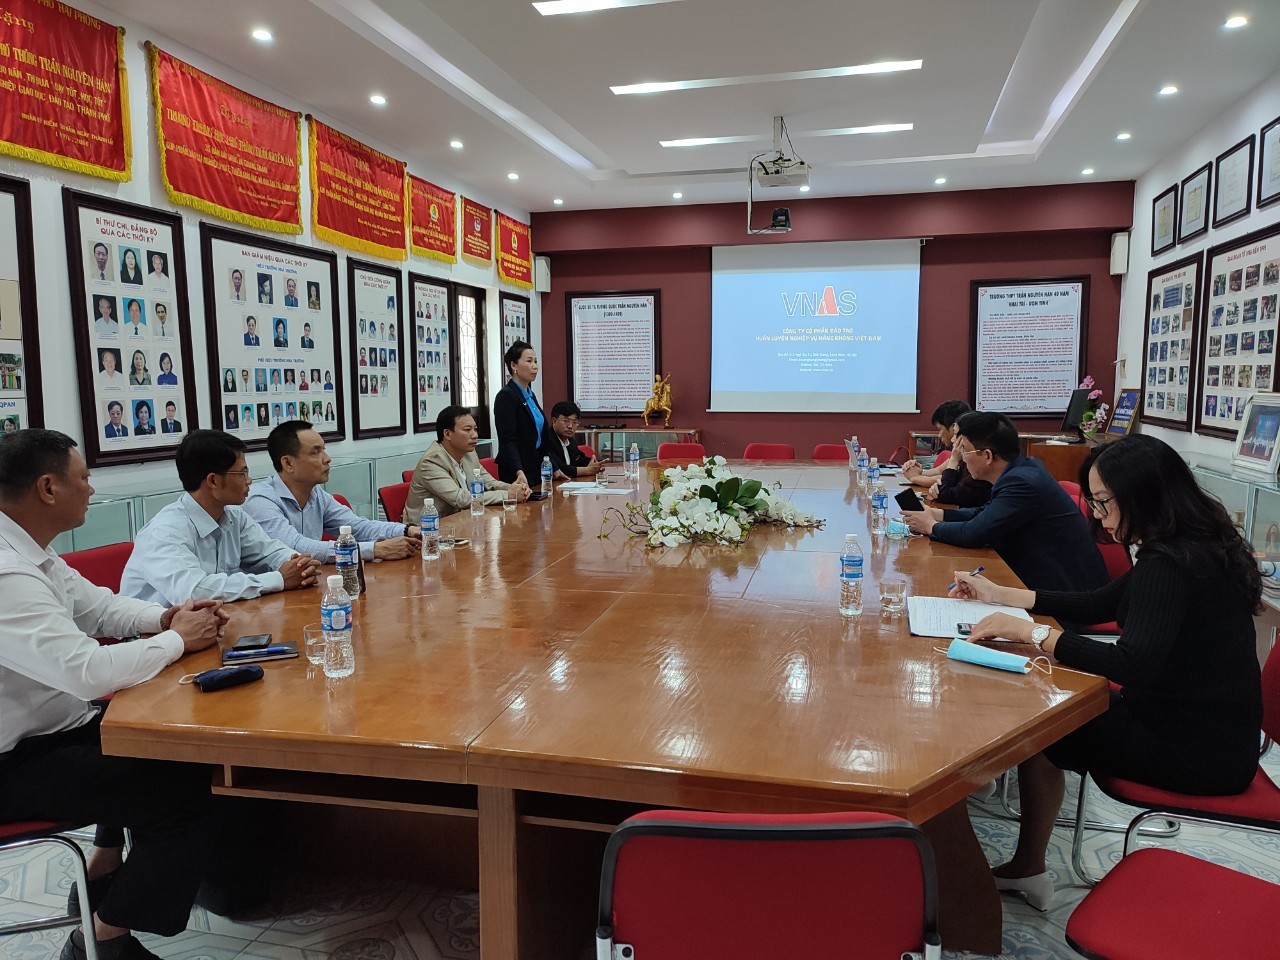 TCông ty Cổ phần Đào tạo Huấn luyện Nghiệp vụ hàng không Việt Nam đến thăm và làm việc với một số đơn vị trường tại thành phố Hải Phòng